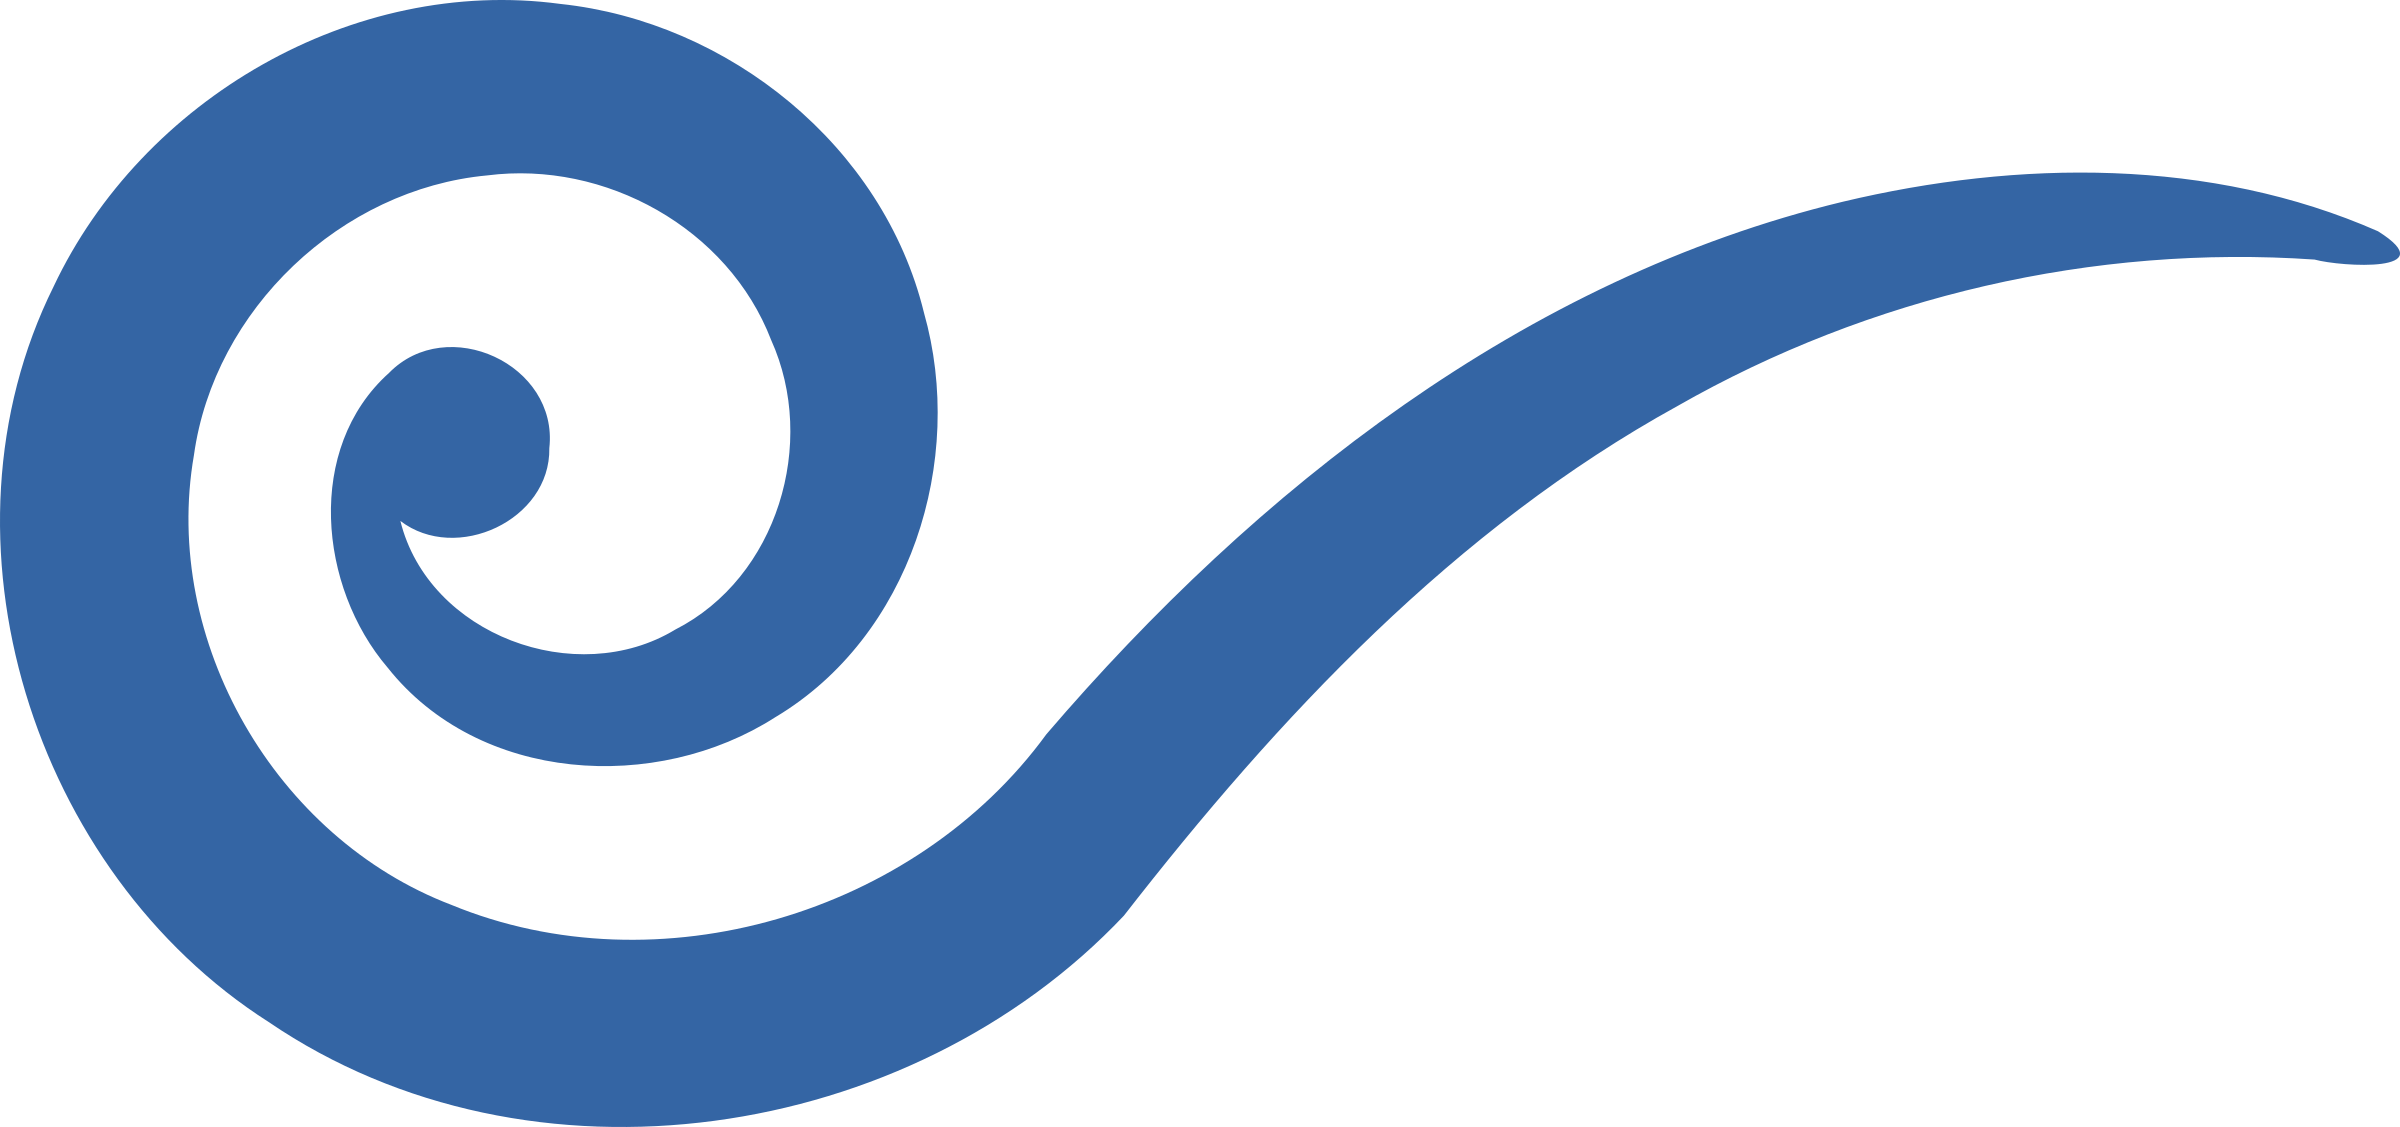 SPIRAL VECTOR Logo Template photo - 1